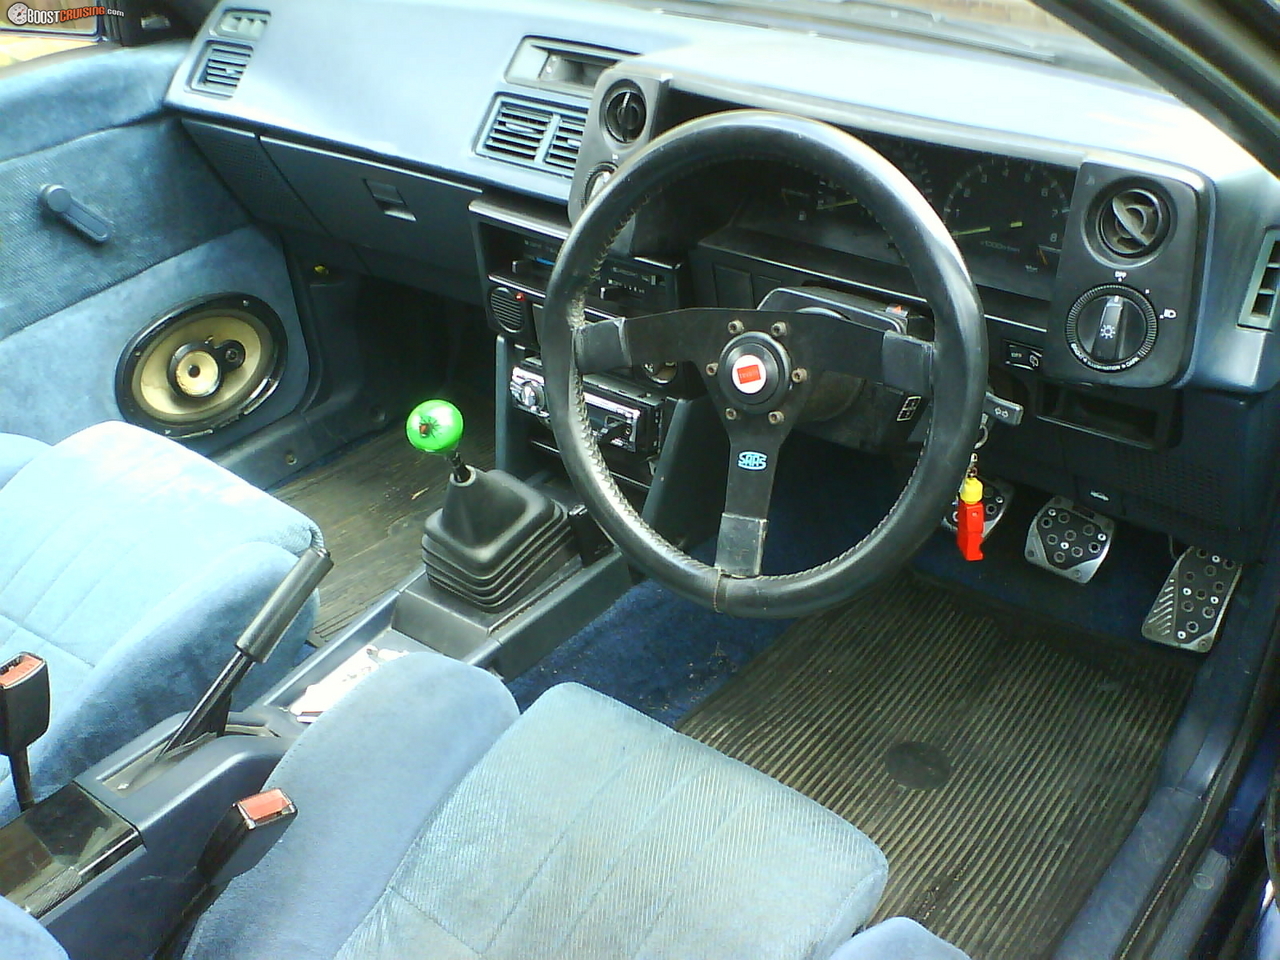 1984 Toyota Corolla Ke20, Ke25 Coupe, Ae86 Gt